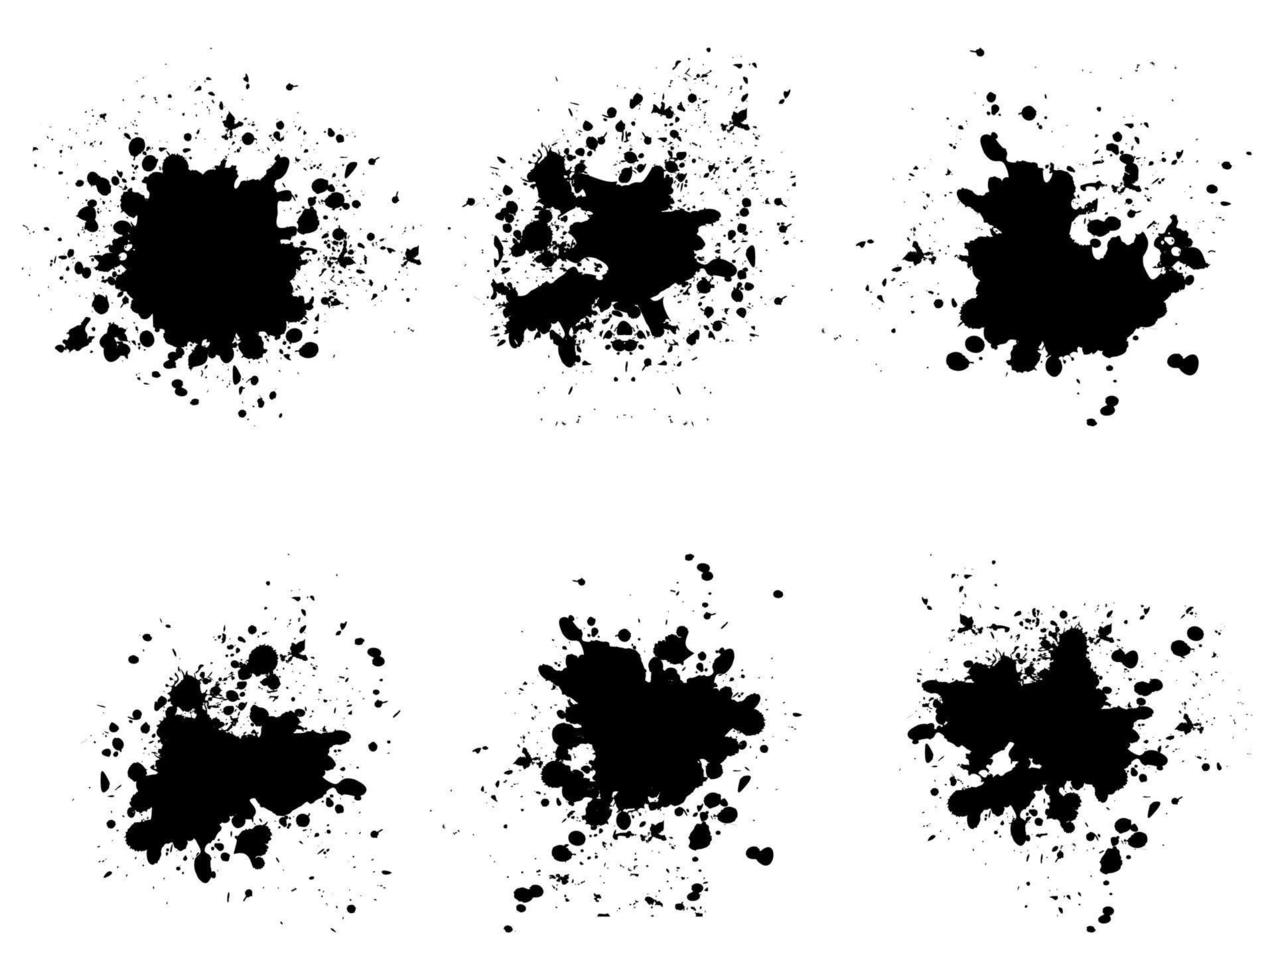 manchas negras abstractas. una ilustración vectorial vector